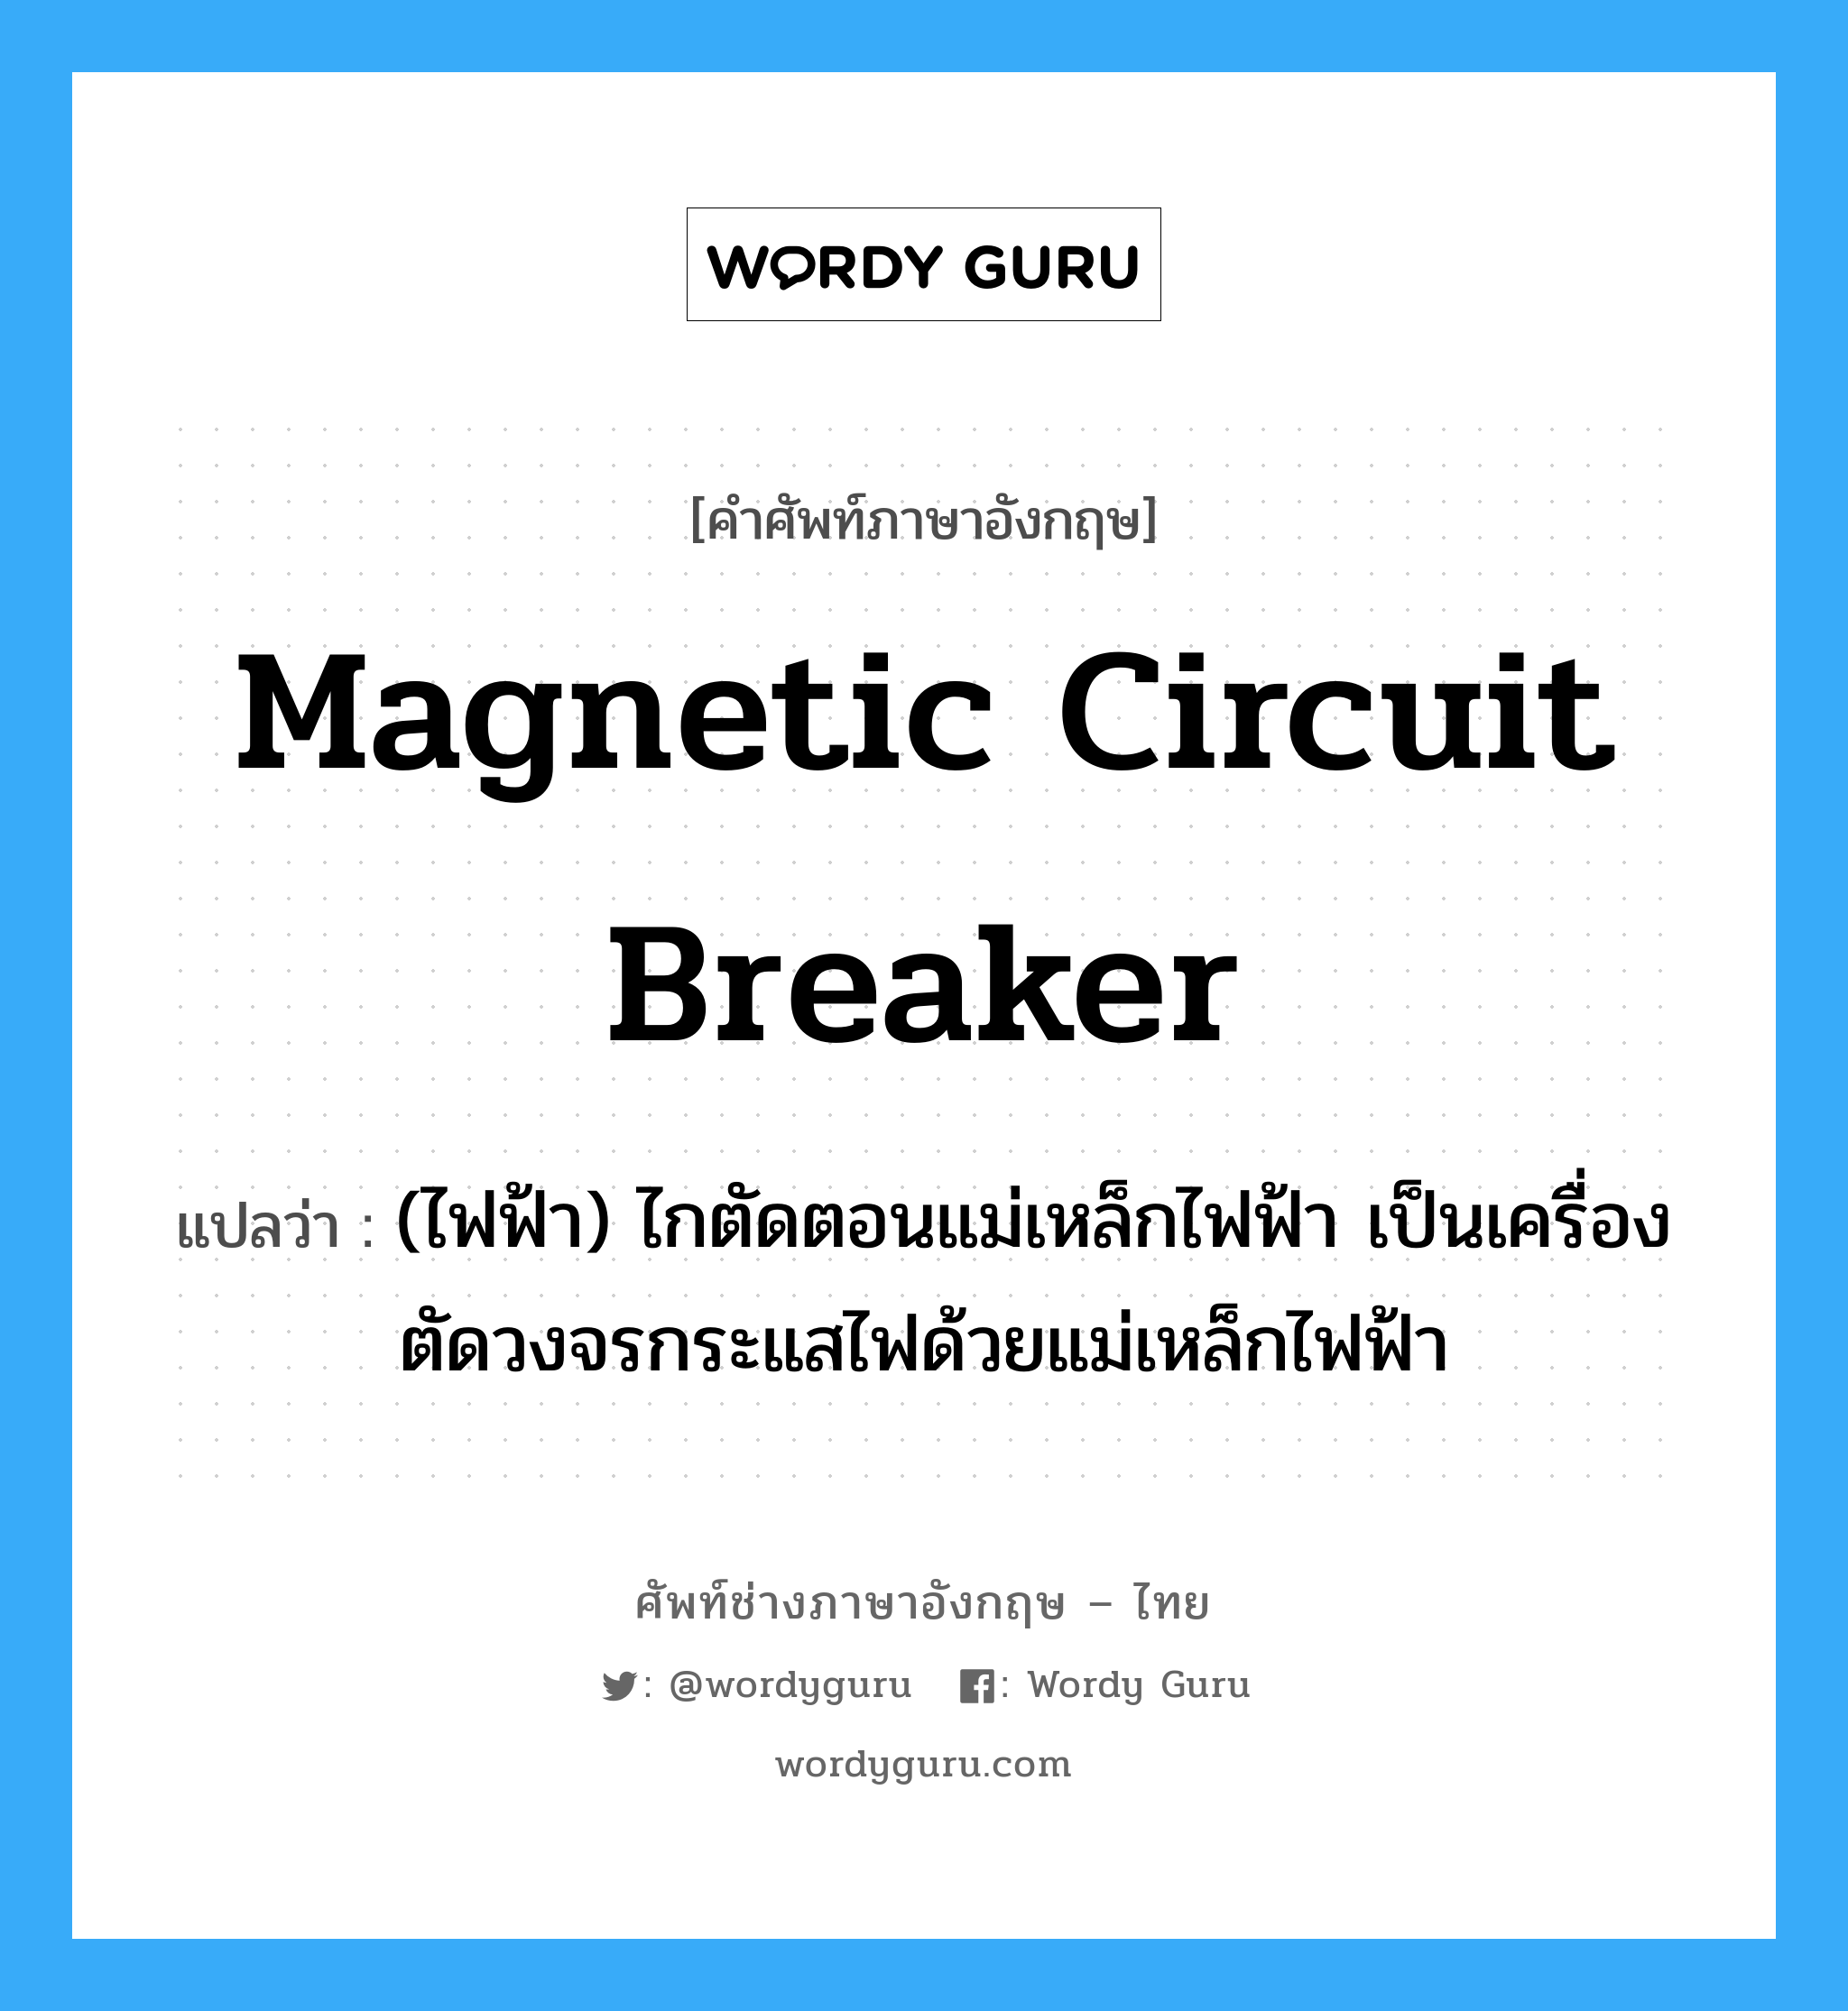 magnetic circuit breaker แปลว่า?, คำศัพท์ช่างภาษาอังกฤษ - ไทย magnetic circuit breaker คำศัพท์ภาษาอังกฤษ magnetic circuit breaker แปลว่า (ไฟฟ้า) ไกตัดตอนแม่เหล็กไฟฟ้า เป็นเครื่องตัดวงจรกระแสไฟด้วยแม่เหล็กไฟฟ้า